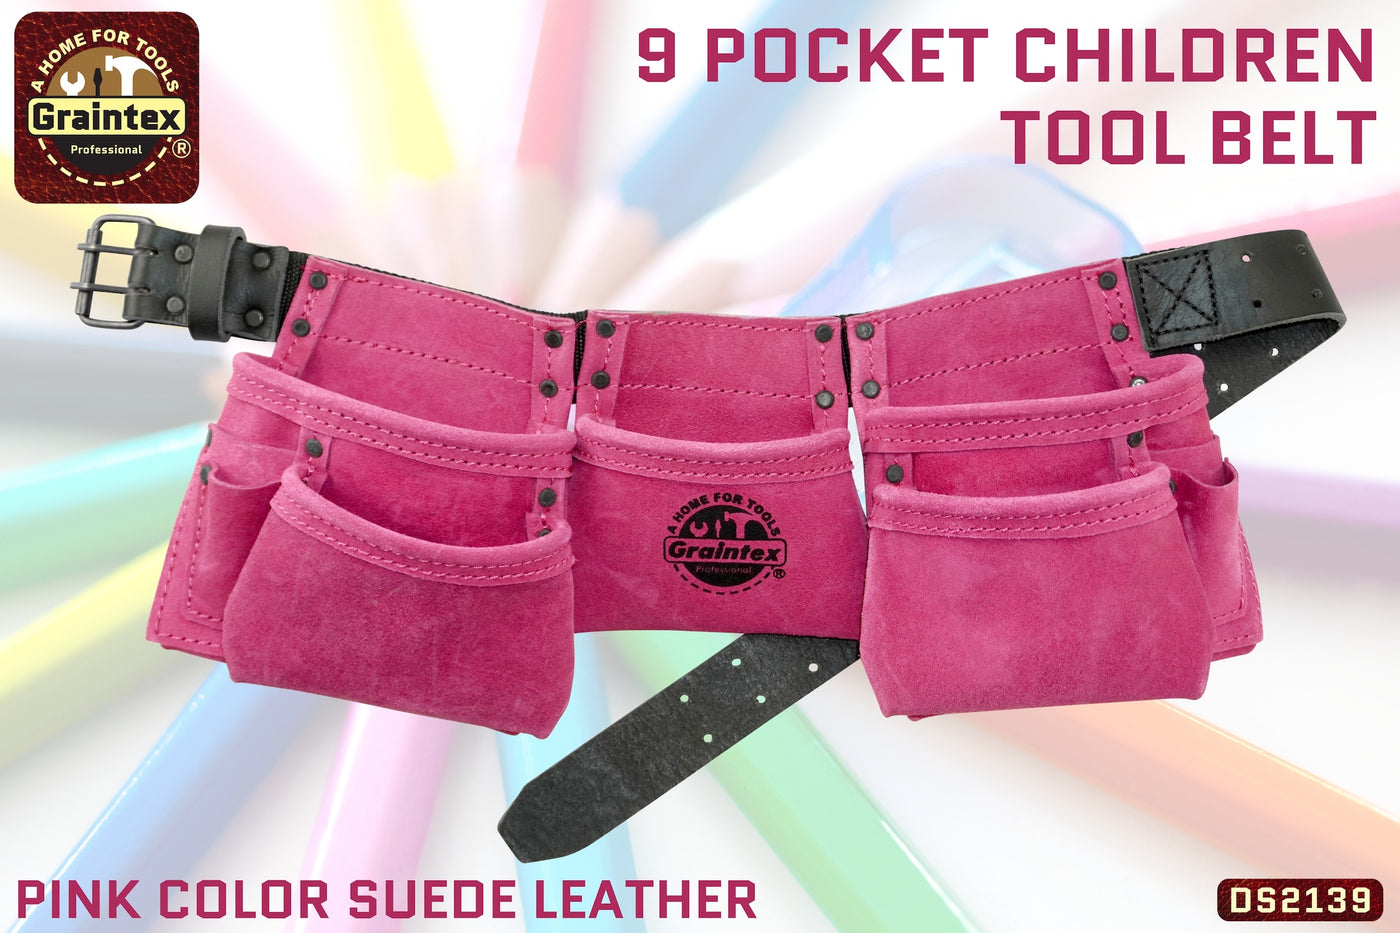 DS2139 :: 9 Pocket Children Tool Belt Pink Color Suede Leather